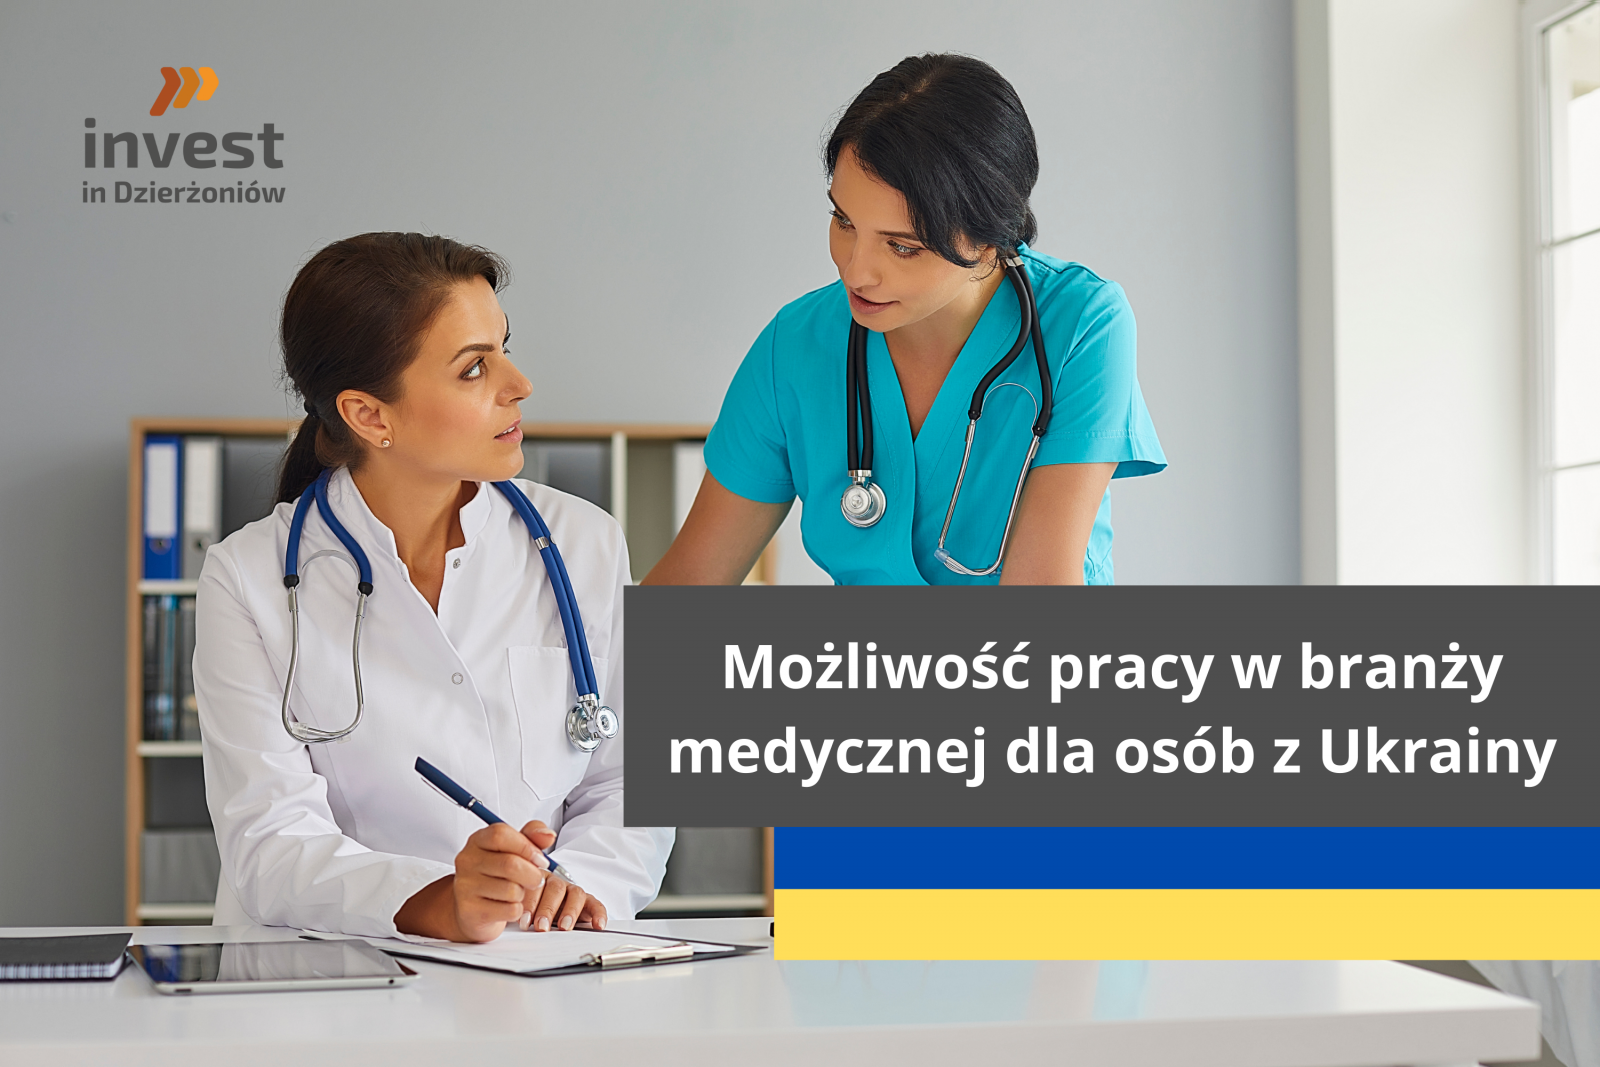 Praca dla osób z Ukrainy w zawodach medycznych